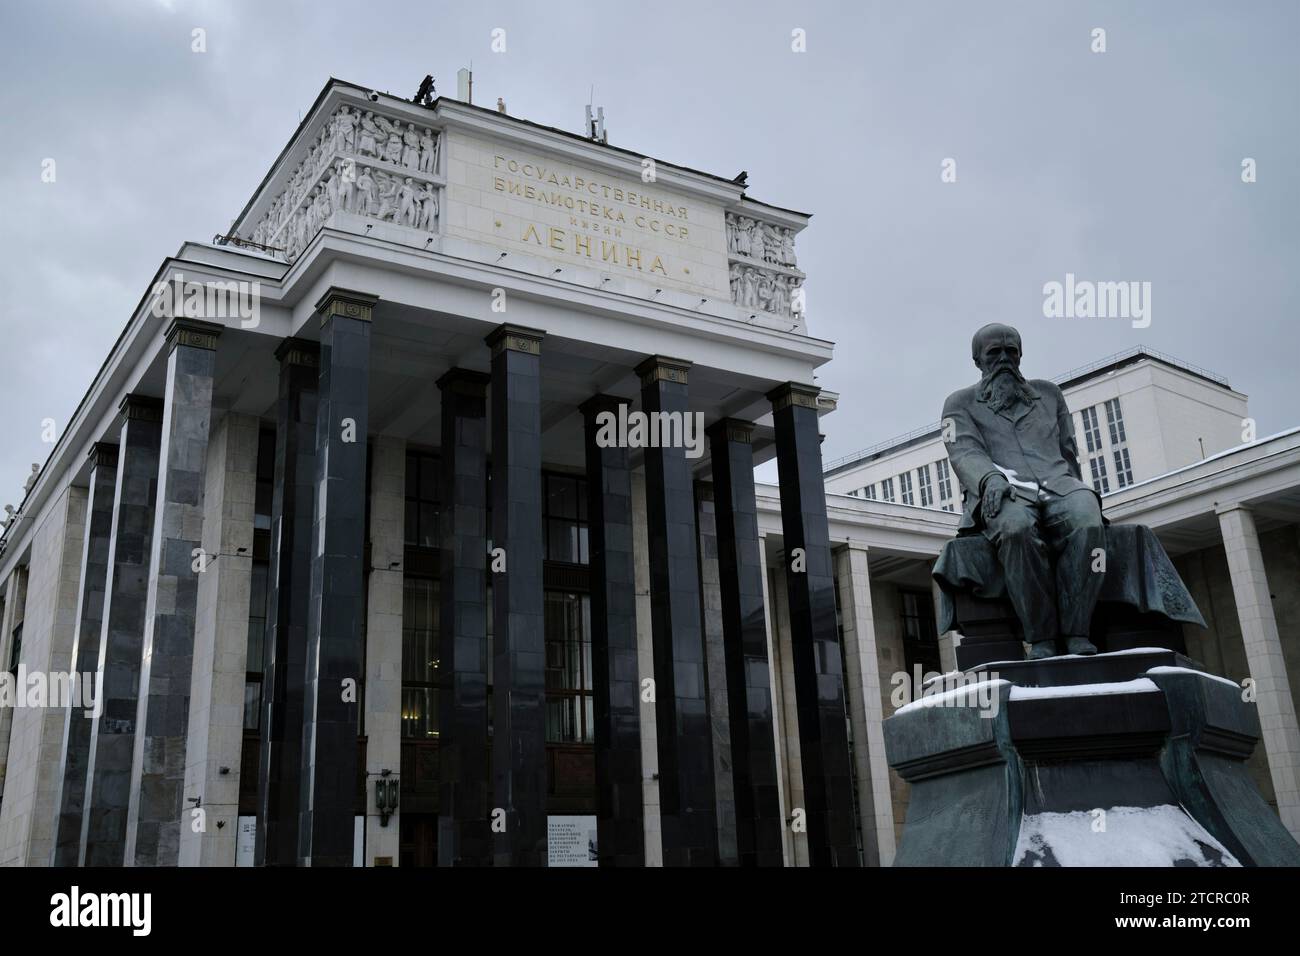 Il monumento a Fyodor Dostoevsky, il grande scrittore russo, di fronte alla Biblioteca di Stato russa. Mosca, Russia. Foto Stock